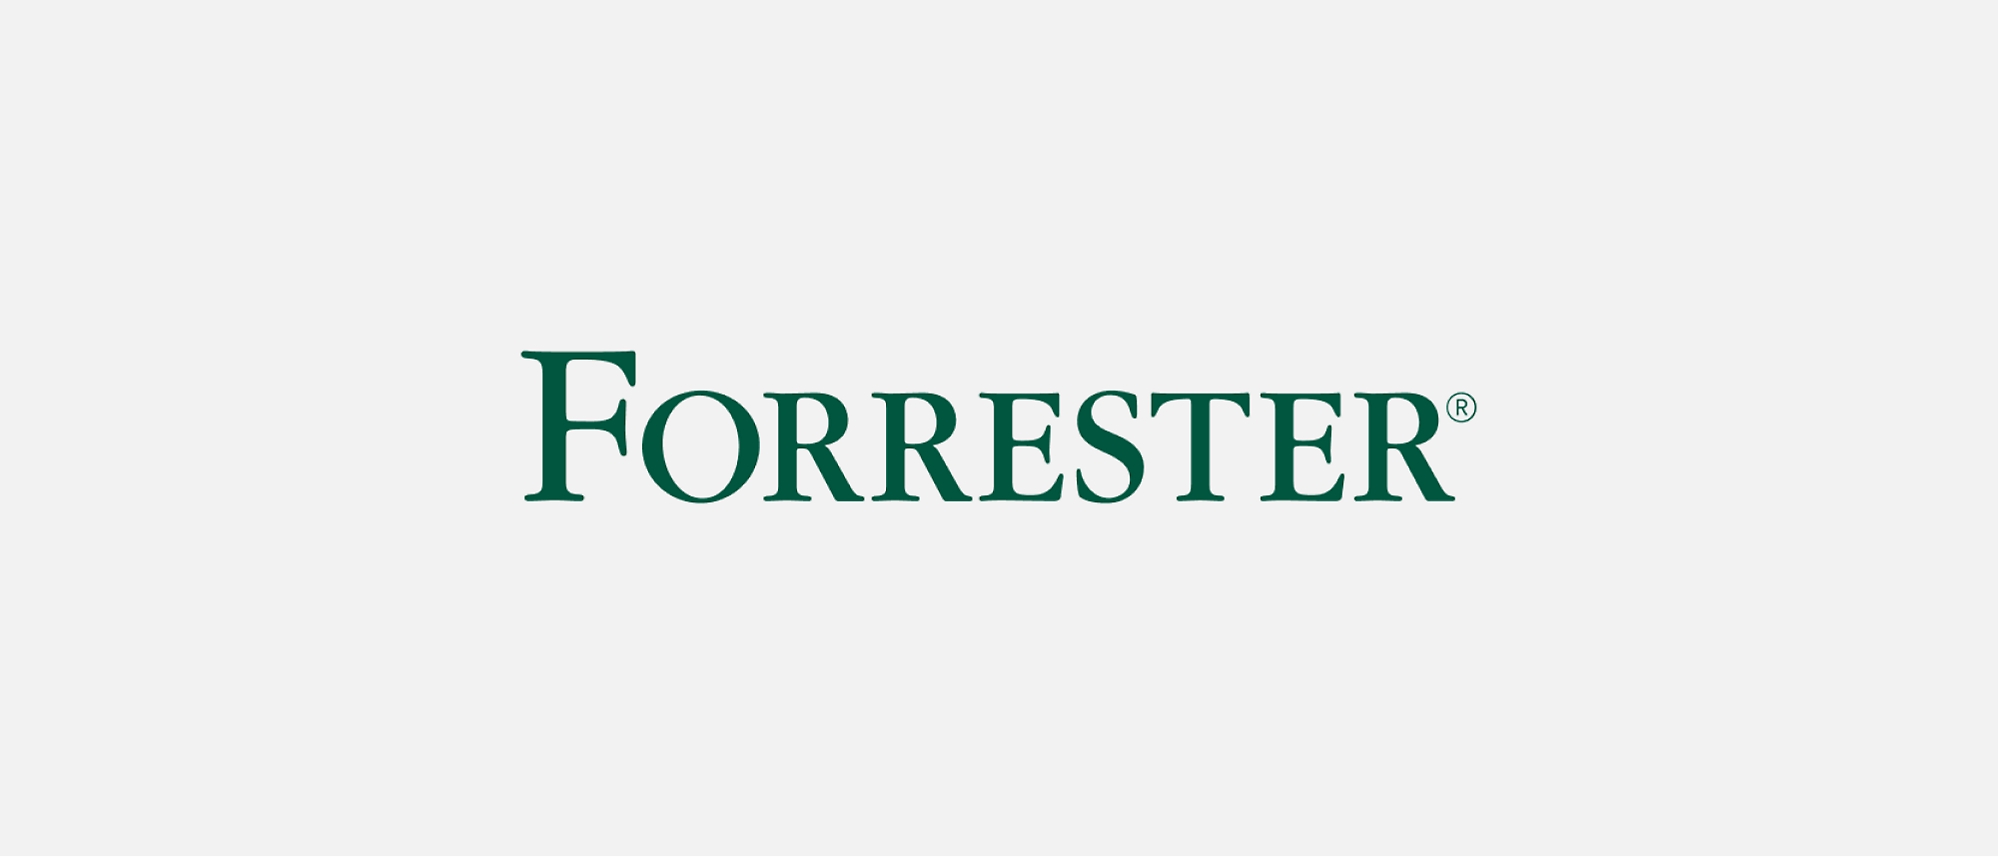 Forester logo